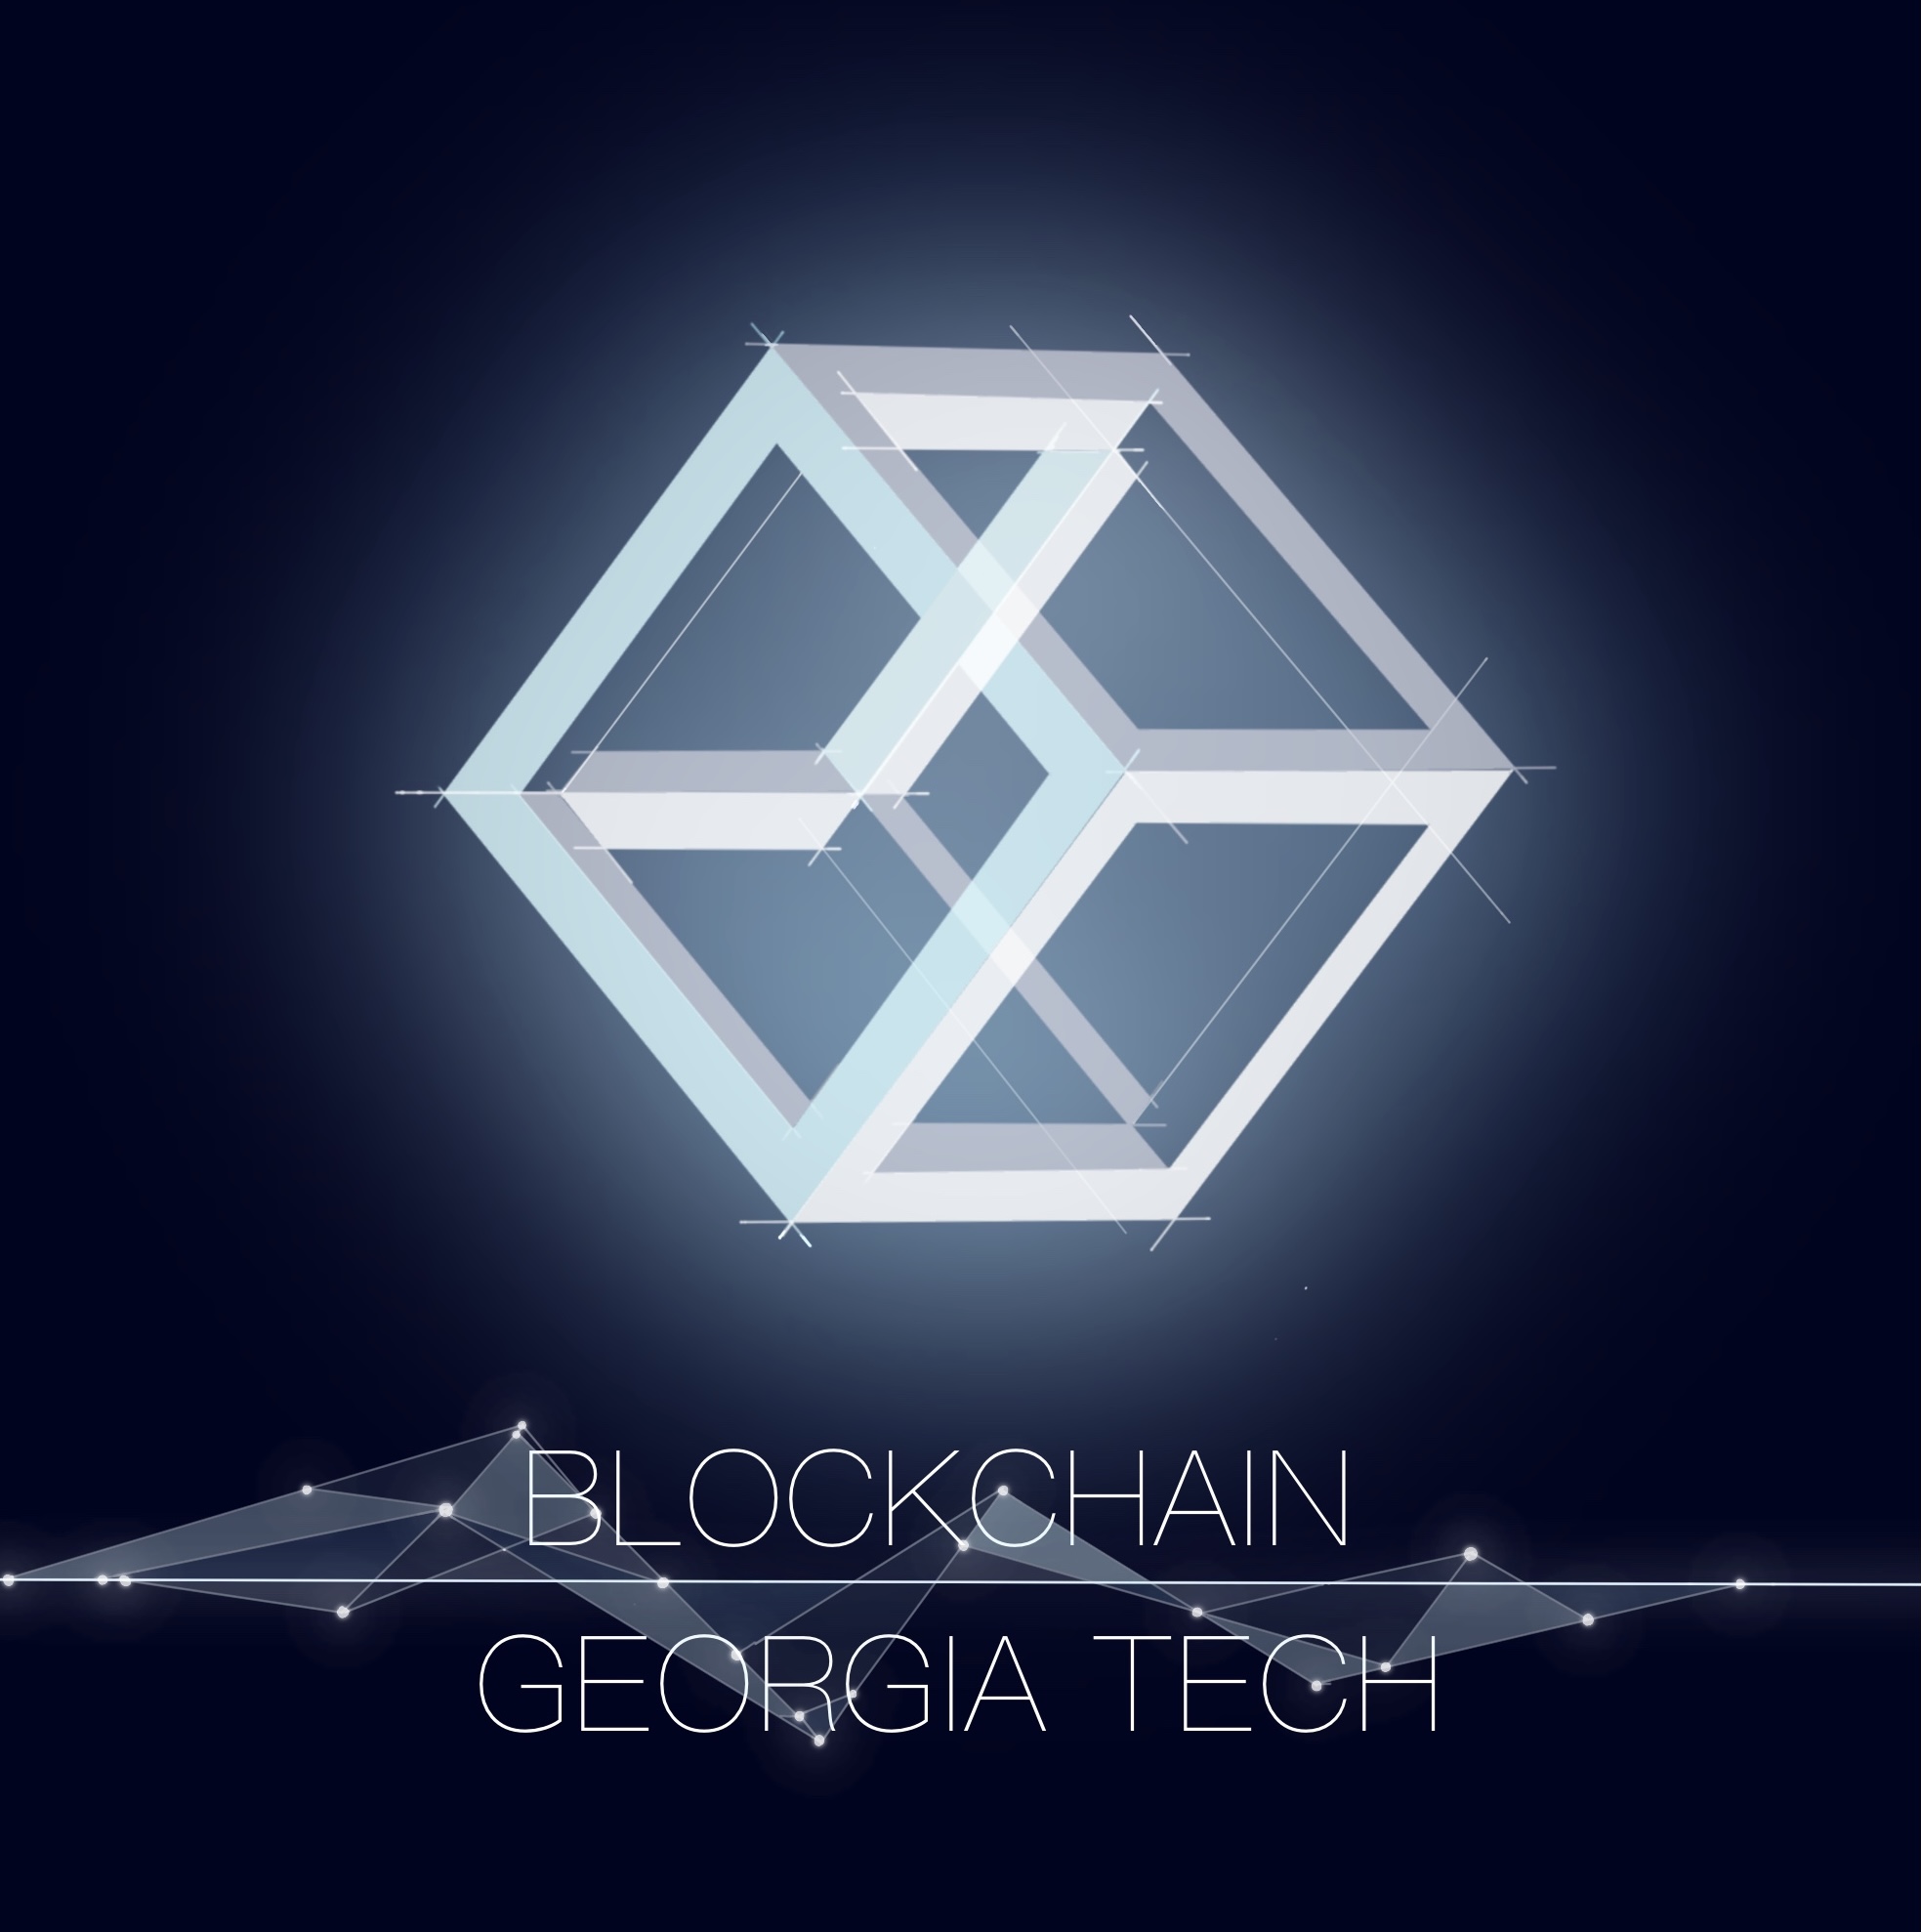 Georgia Tech Blockchain Club